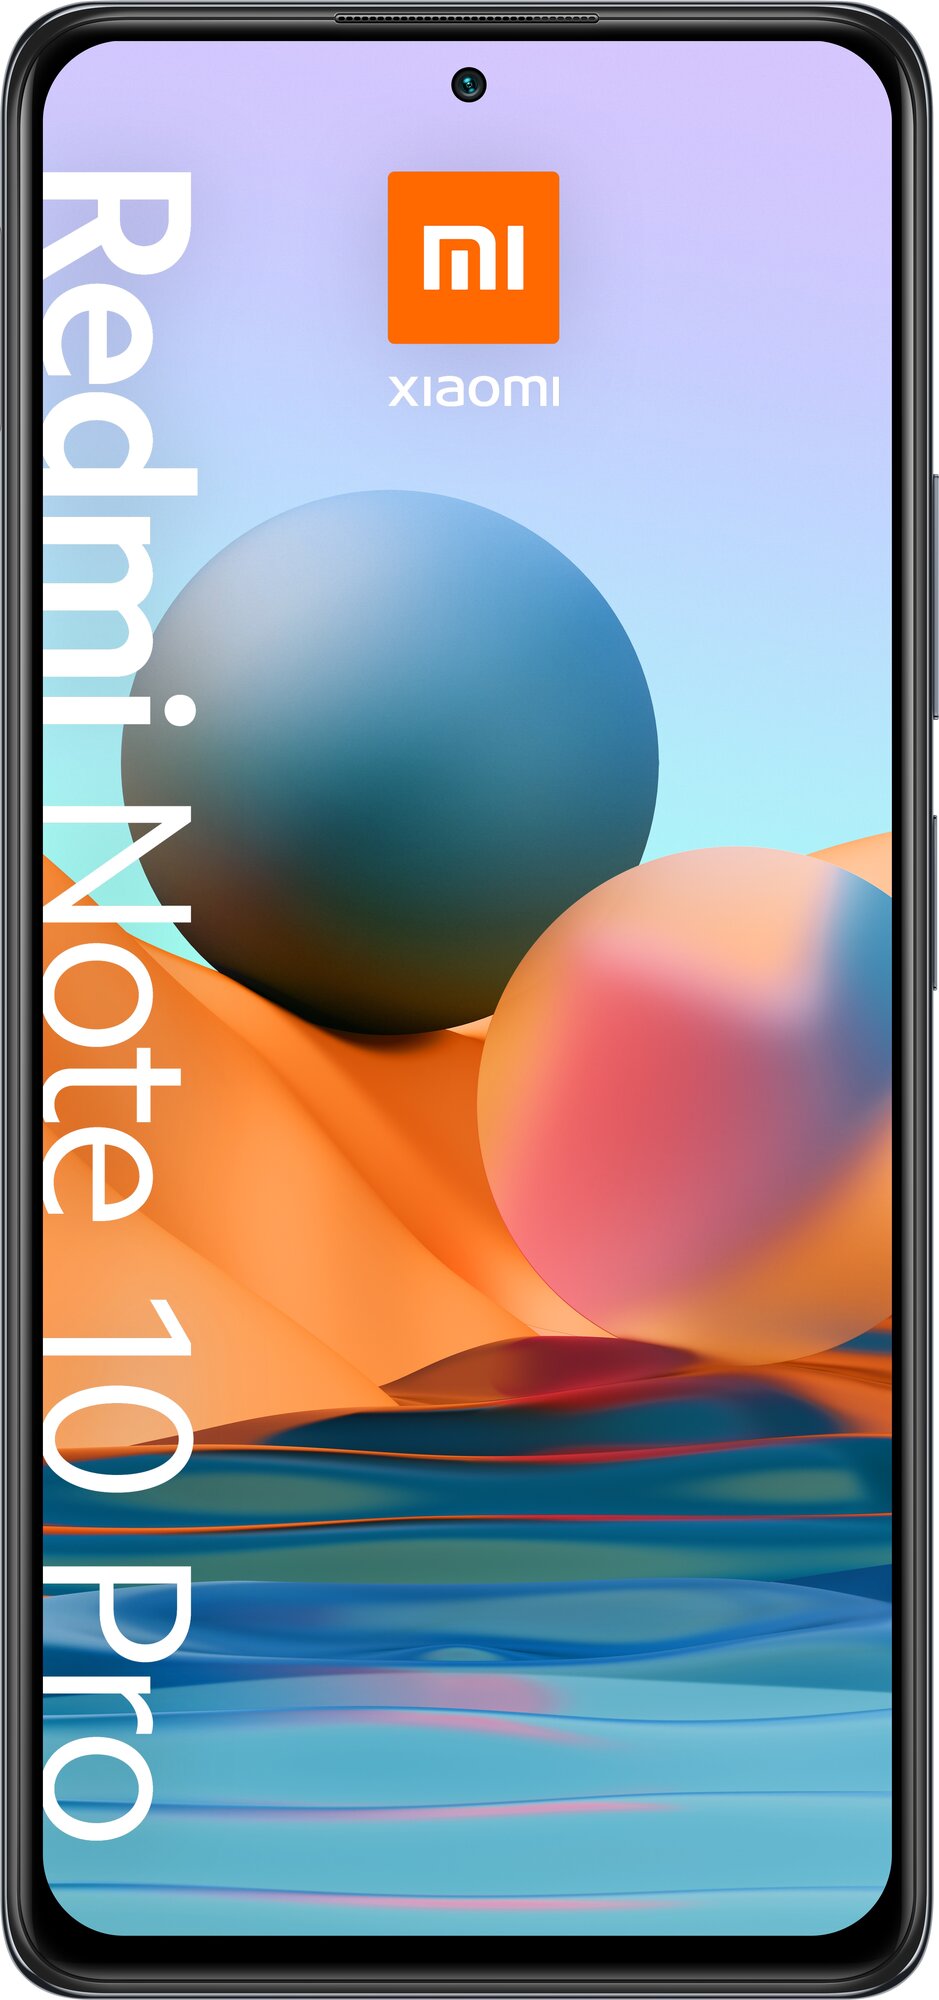 Xiaomi - фото №2